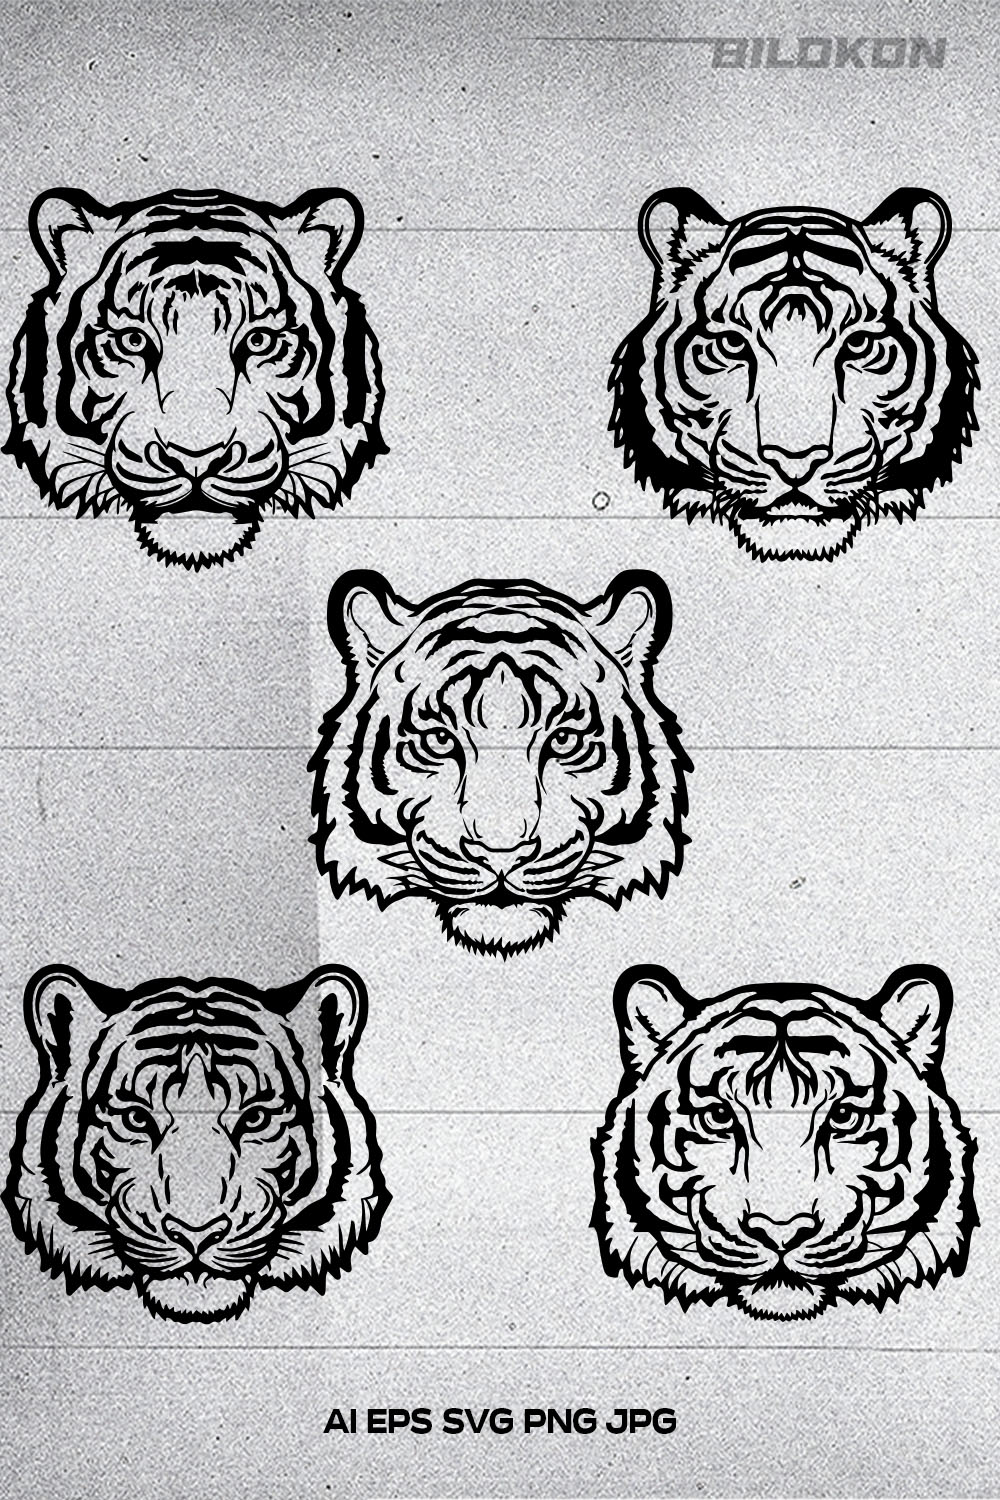 Tiger head, Tiger face, SVG Vector Illustration pinterest preview image.